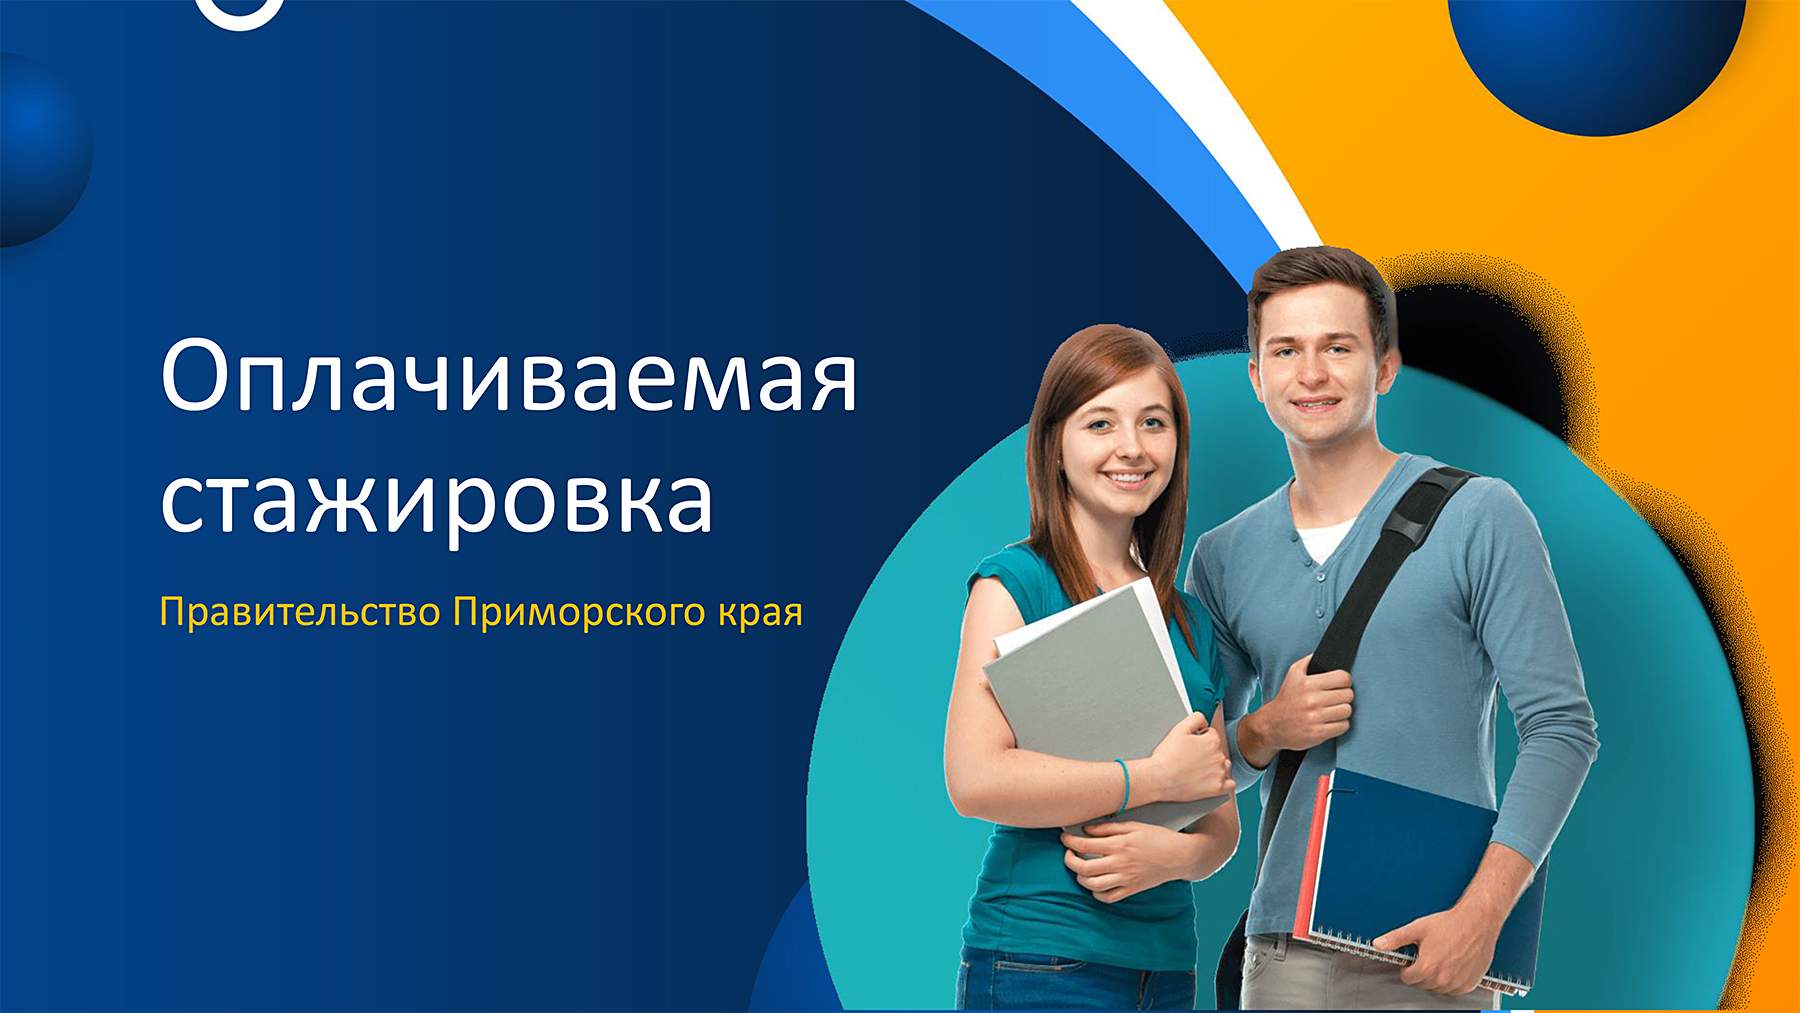 Правительство Приморского края приглашает студентов ВВГУ на стажировку